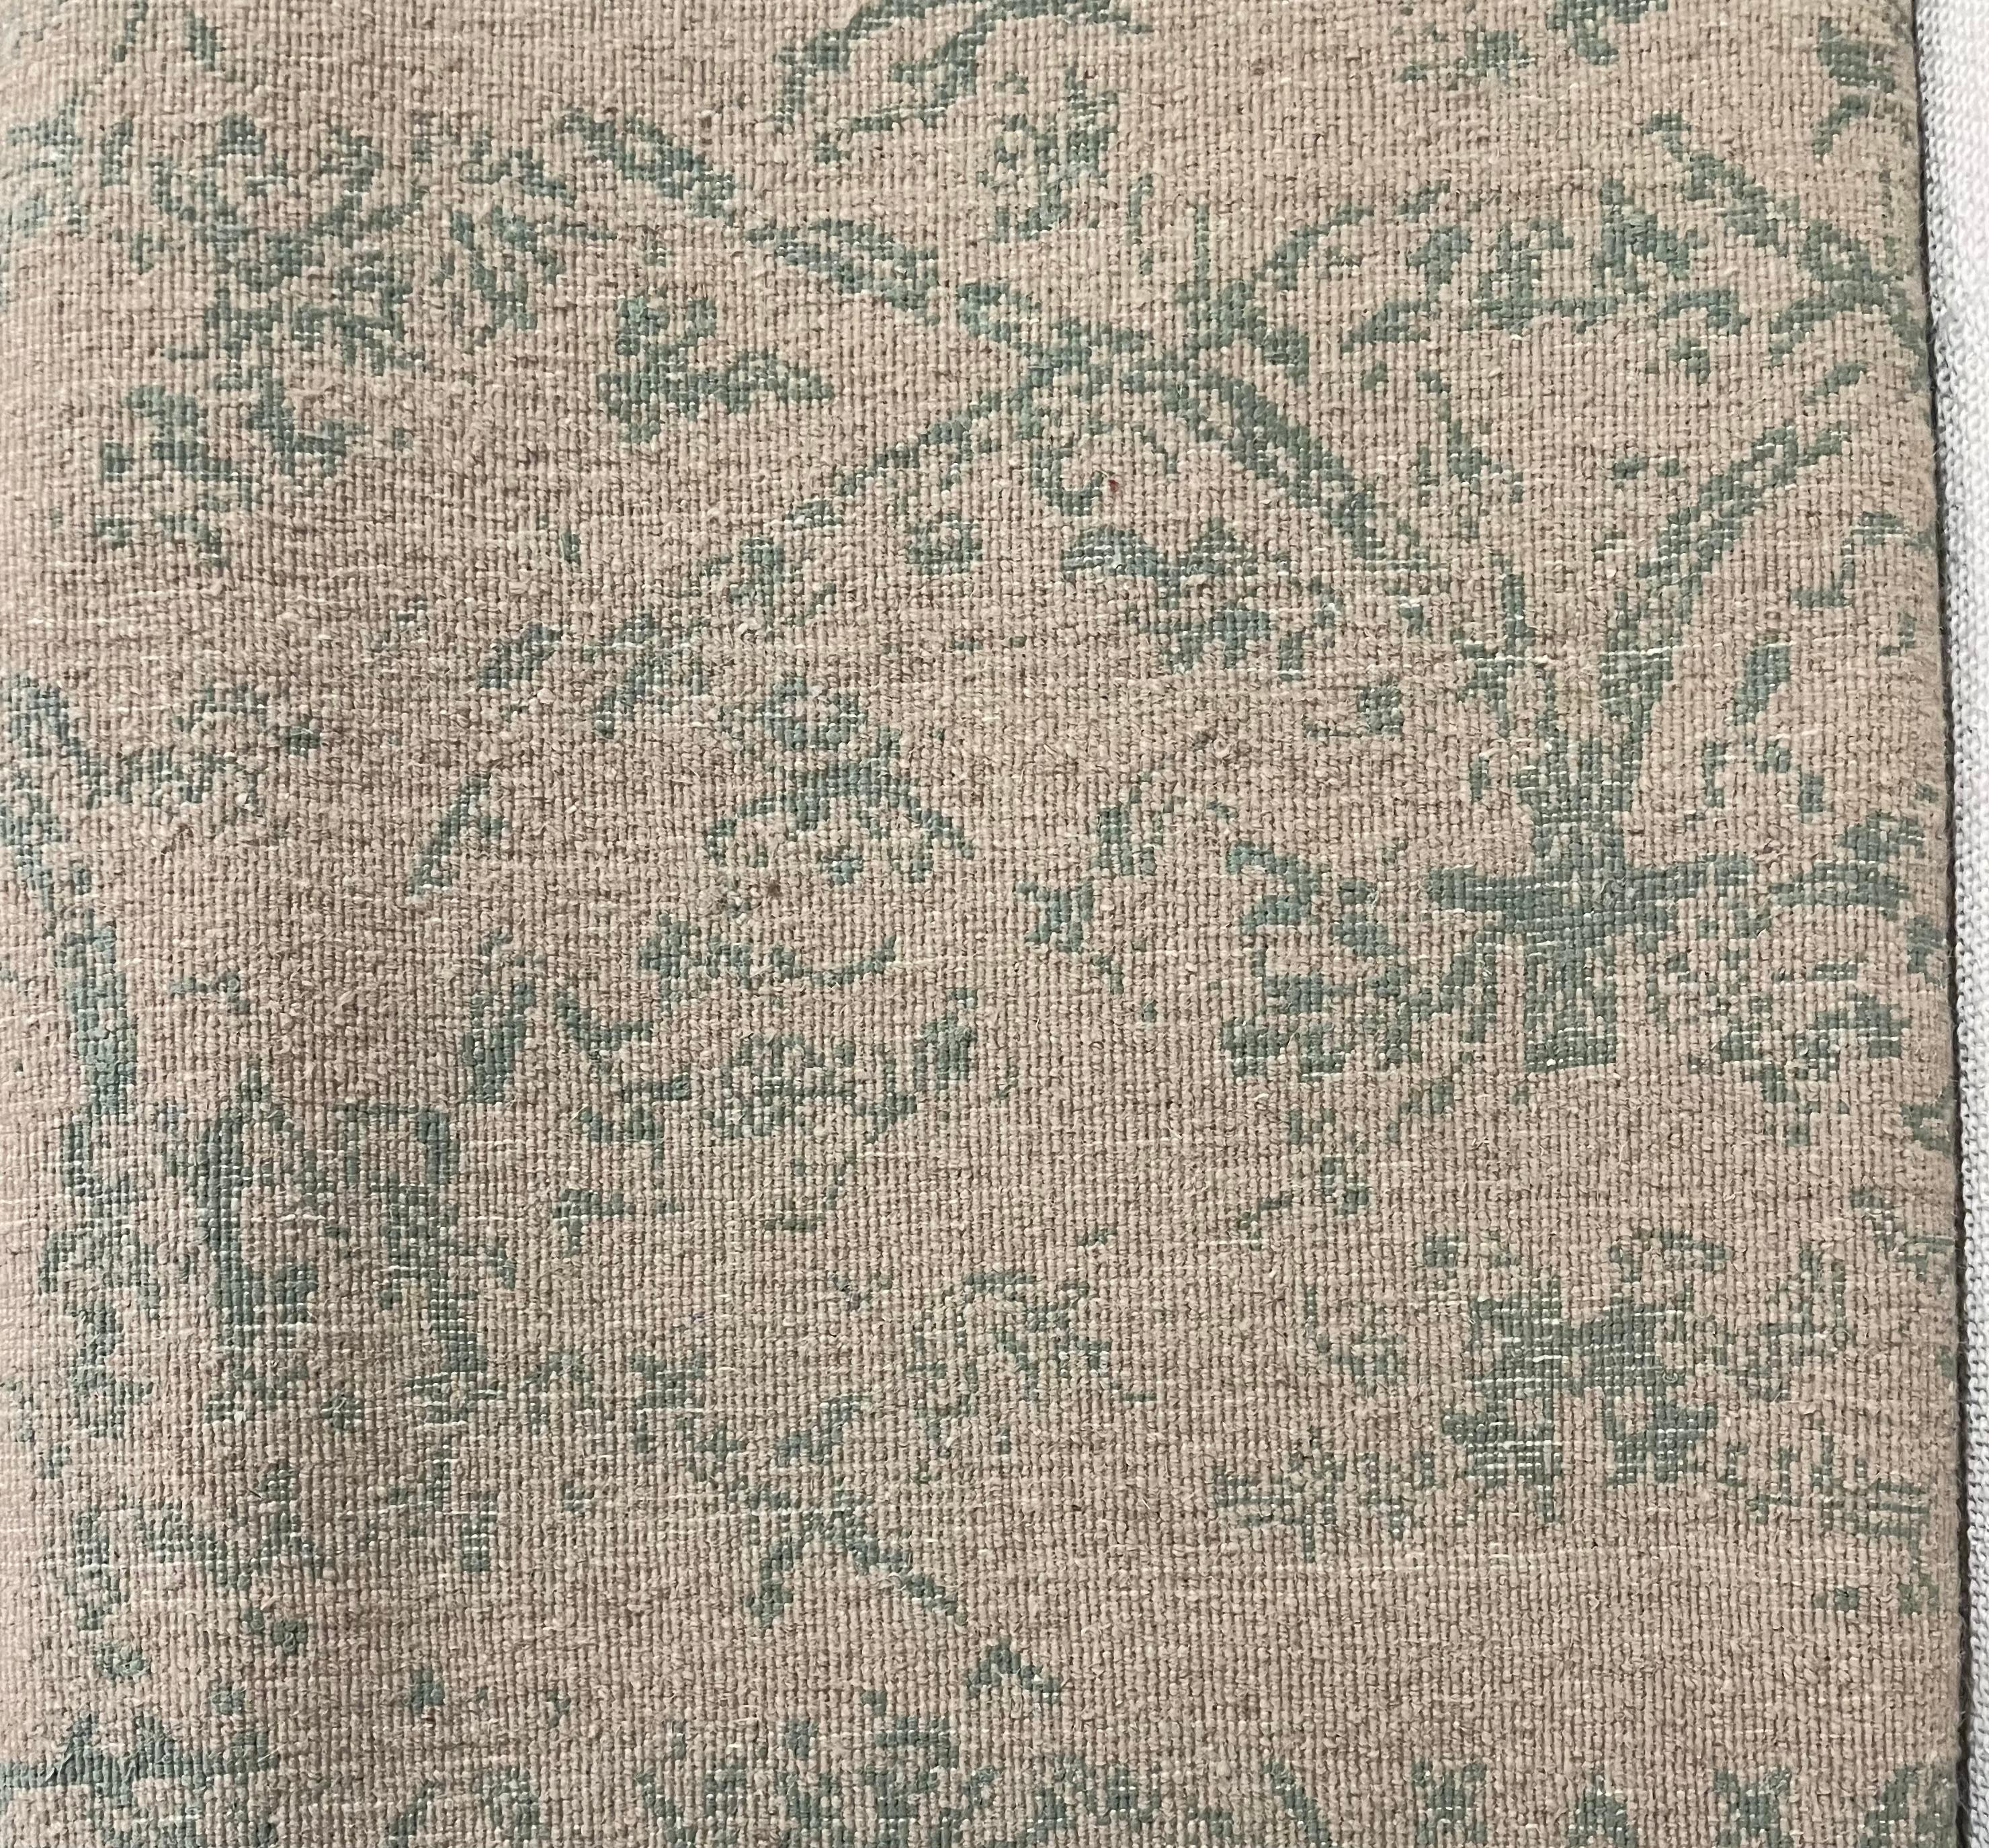 Dieser Teppich ist aus unserer Master-Loom Kollektion. Das Format ist 170cm x 240cm, handgeknüpft und besteht aus einer einzigartigen Mischung aus hochwertiger Wolle und Bambus-Seide, deren natürlicher Glanz moderne Farbtöne und mit einem